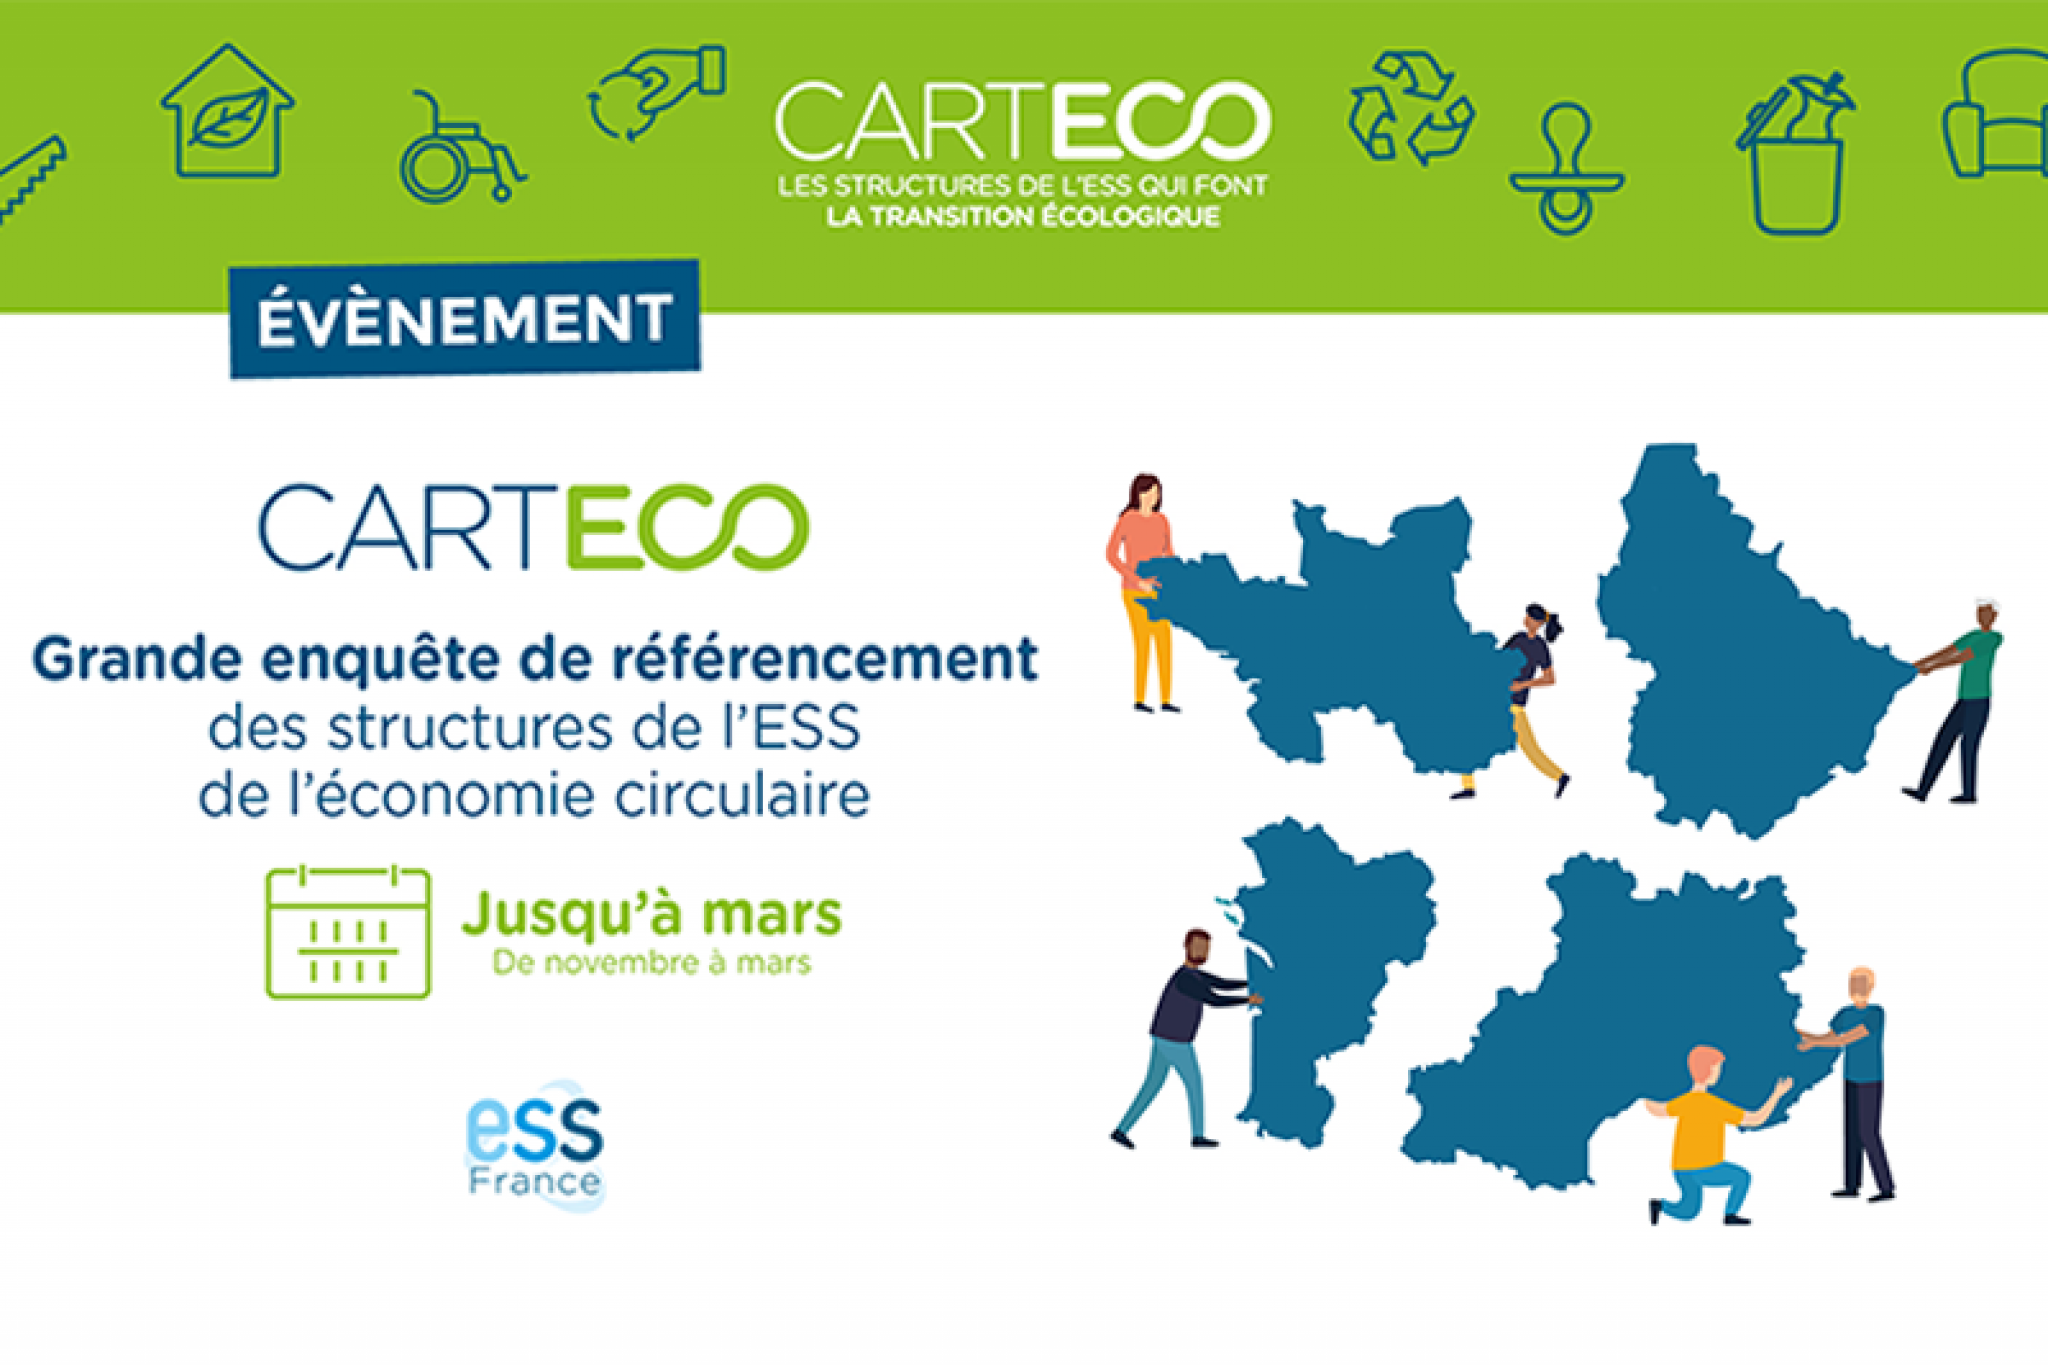 Carteco, la carte des structures de l'ESS qui font la transition écologique